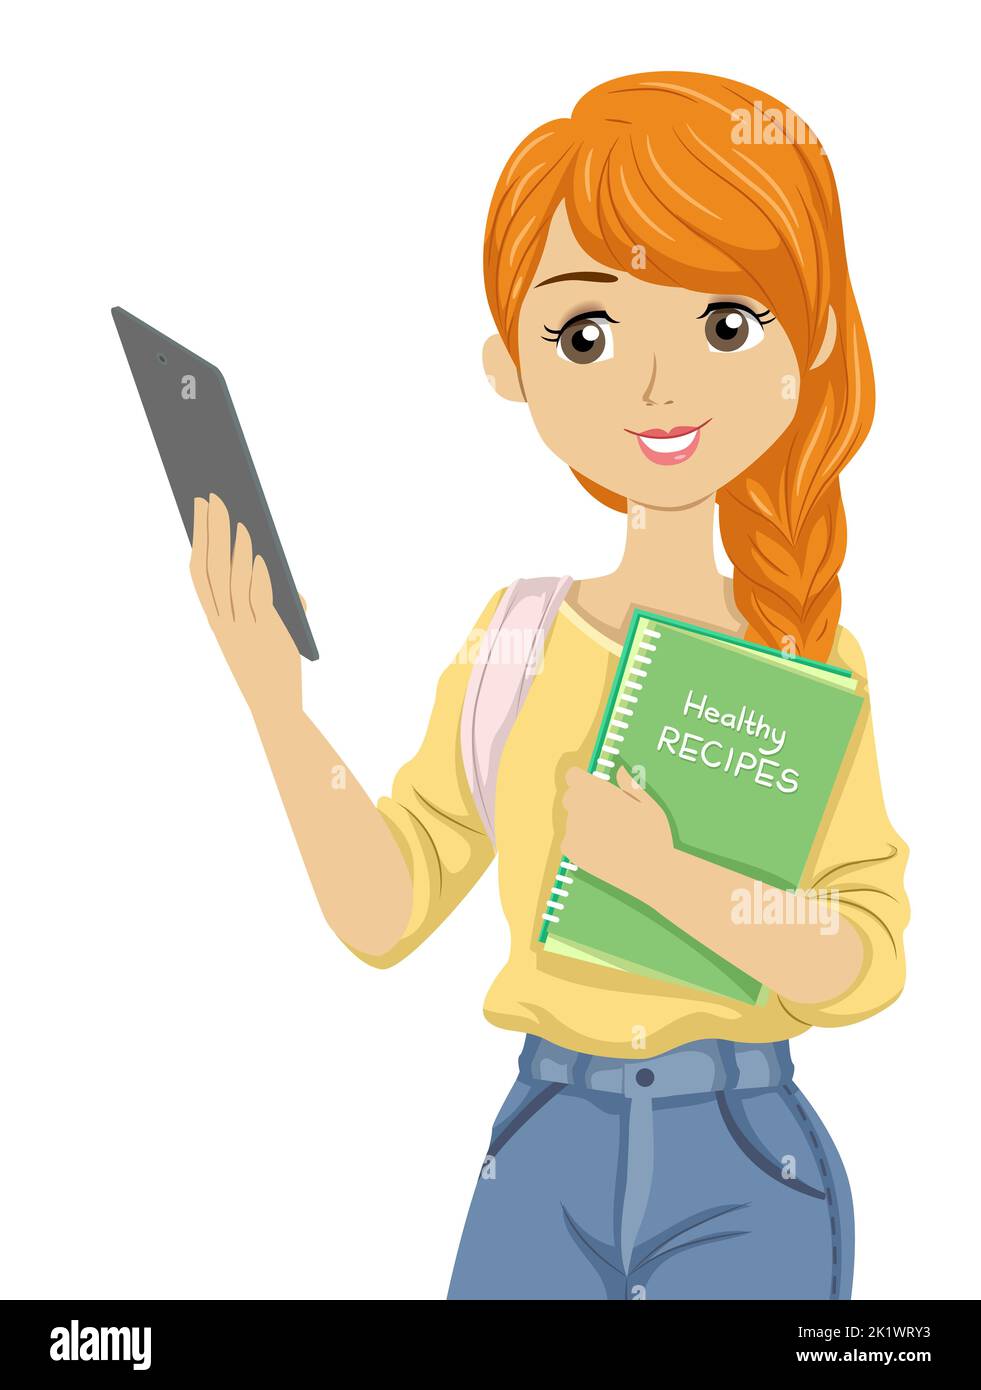 Illustrazione di ragazza teen che tiene la compressa e che trasporta un libro delle ricette sane Foto Stock